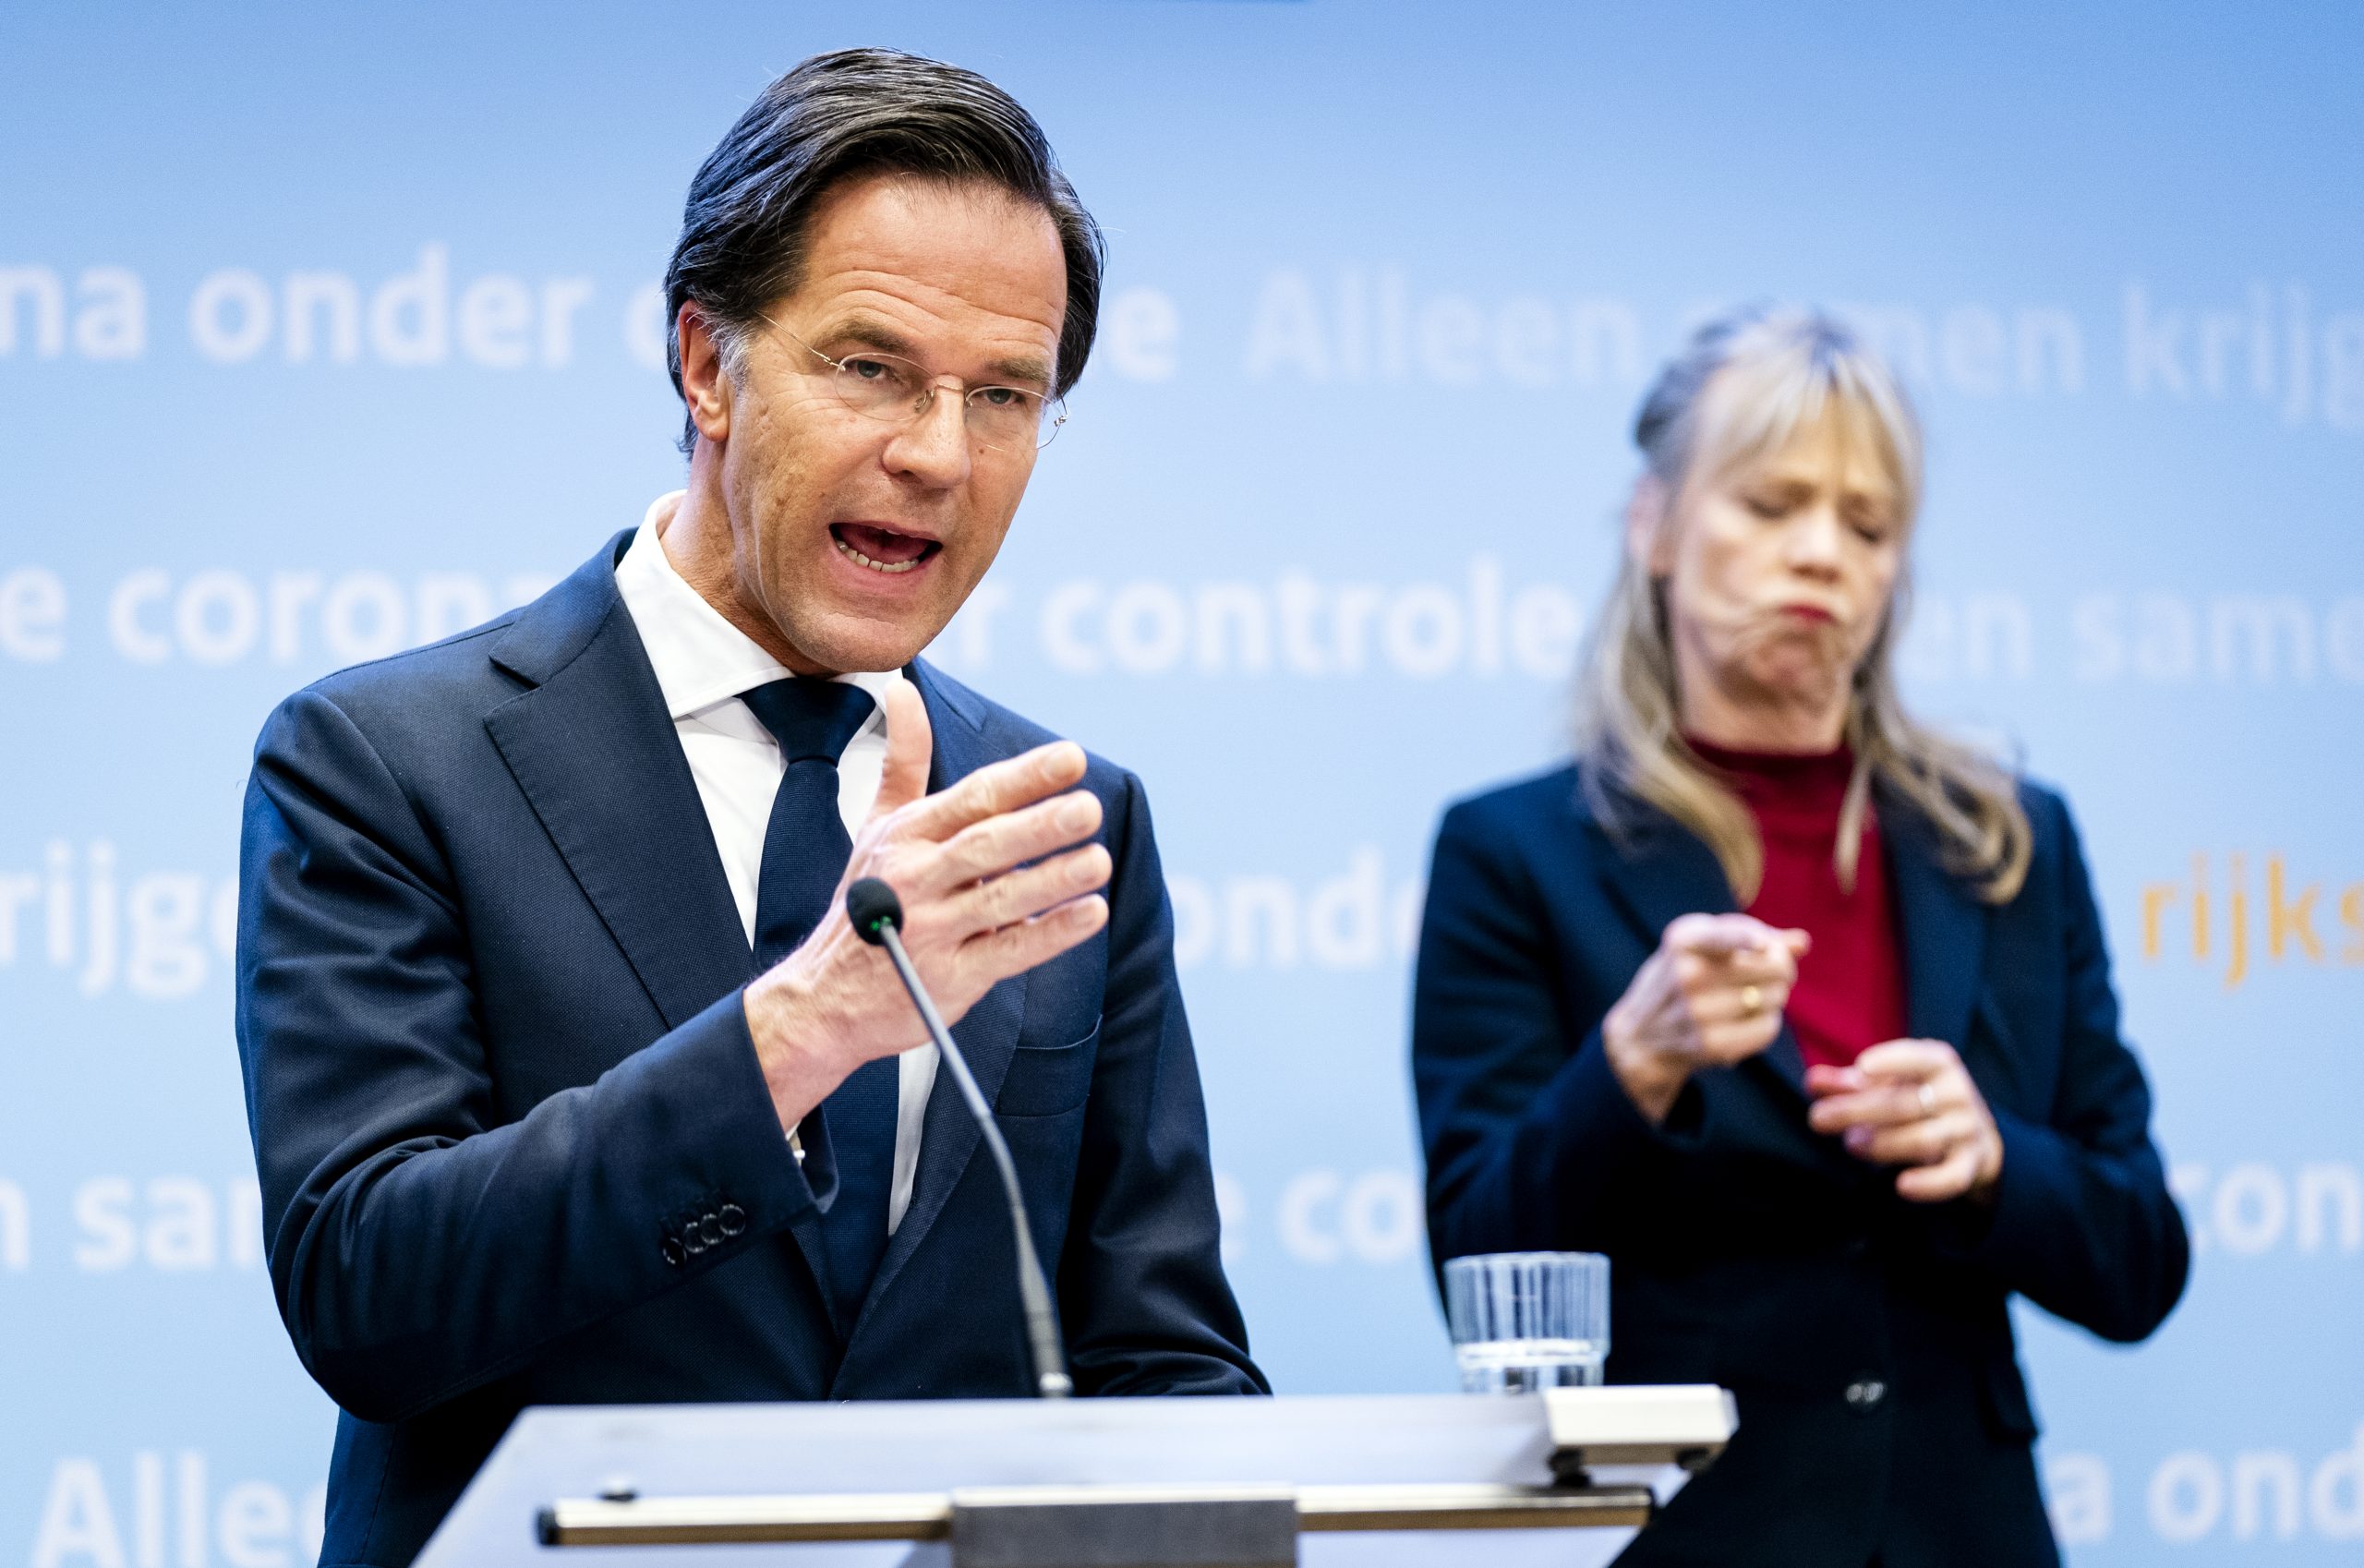 Demissionair premier Mark Rutte geeft tijdens een persconferentie een toelichting op de coronamaatregelen in Nederland.